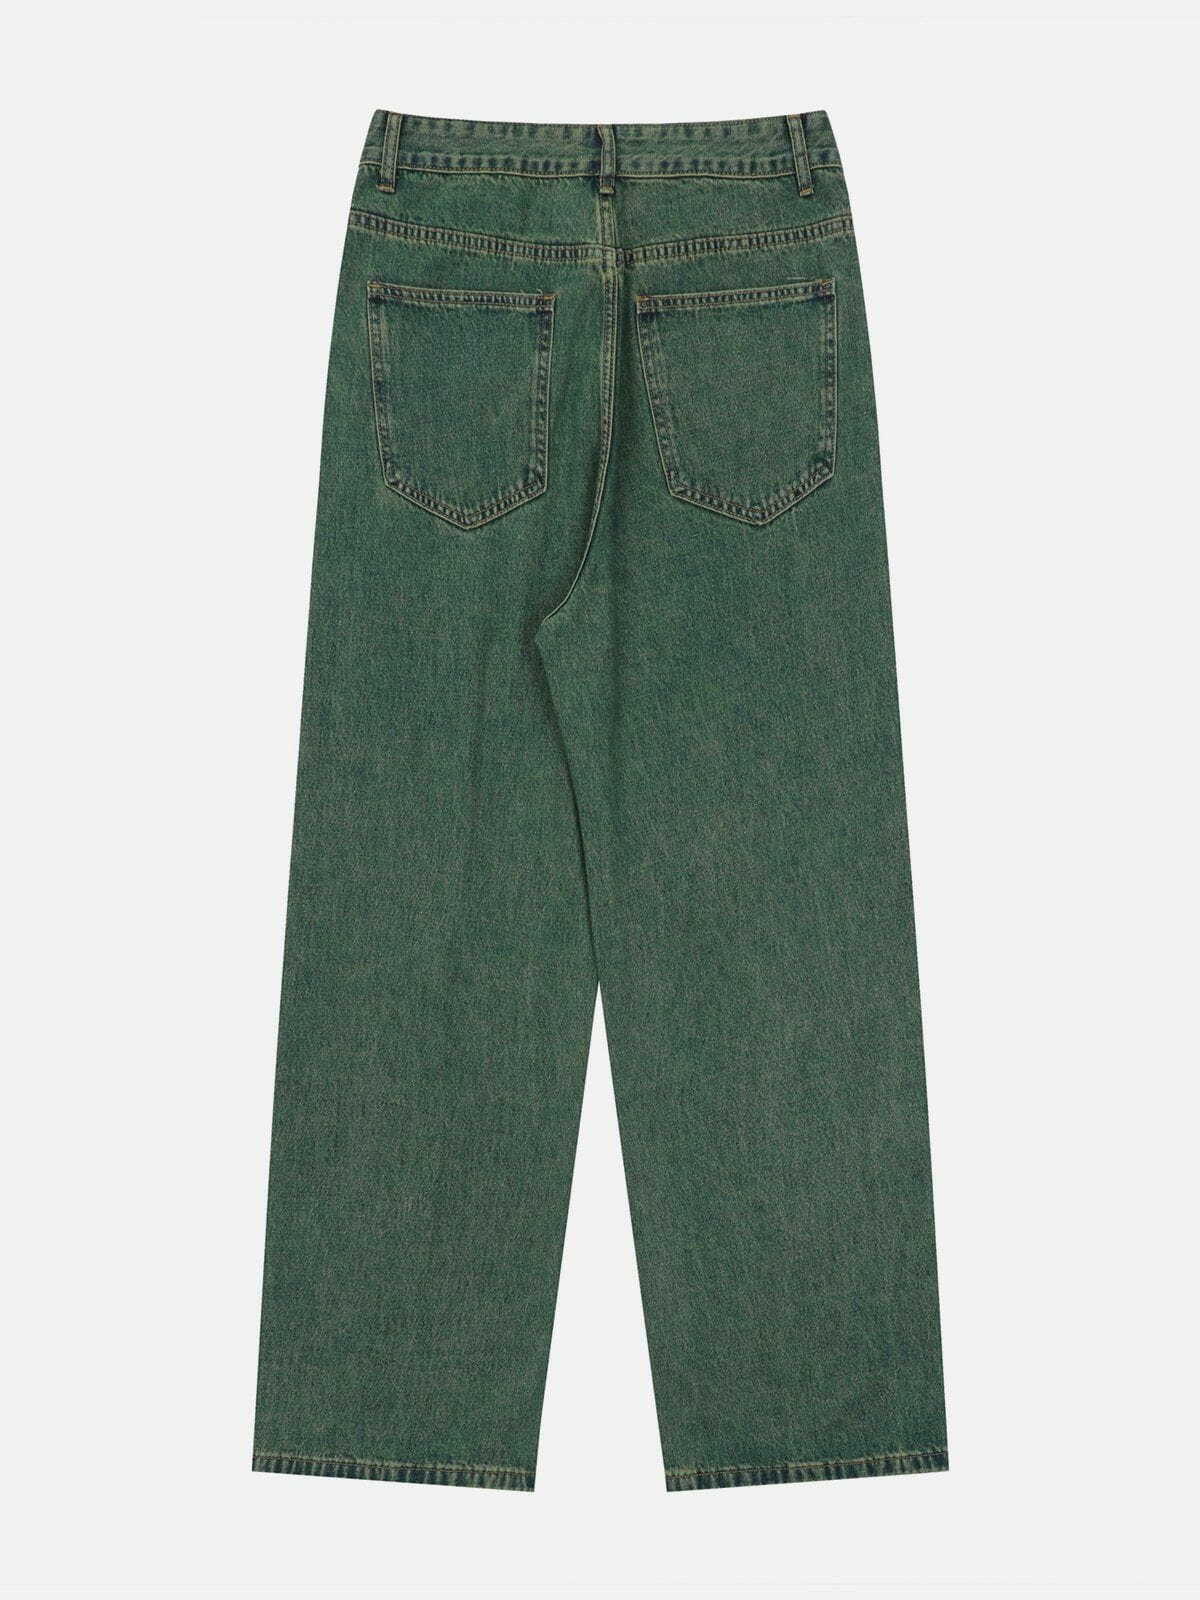 vintage washed lines design jeans urban vintage washed denim retro & edgy fashion 3496